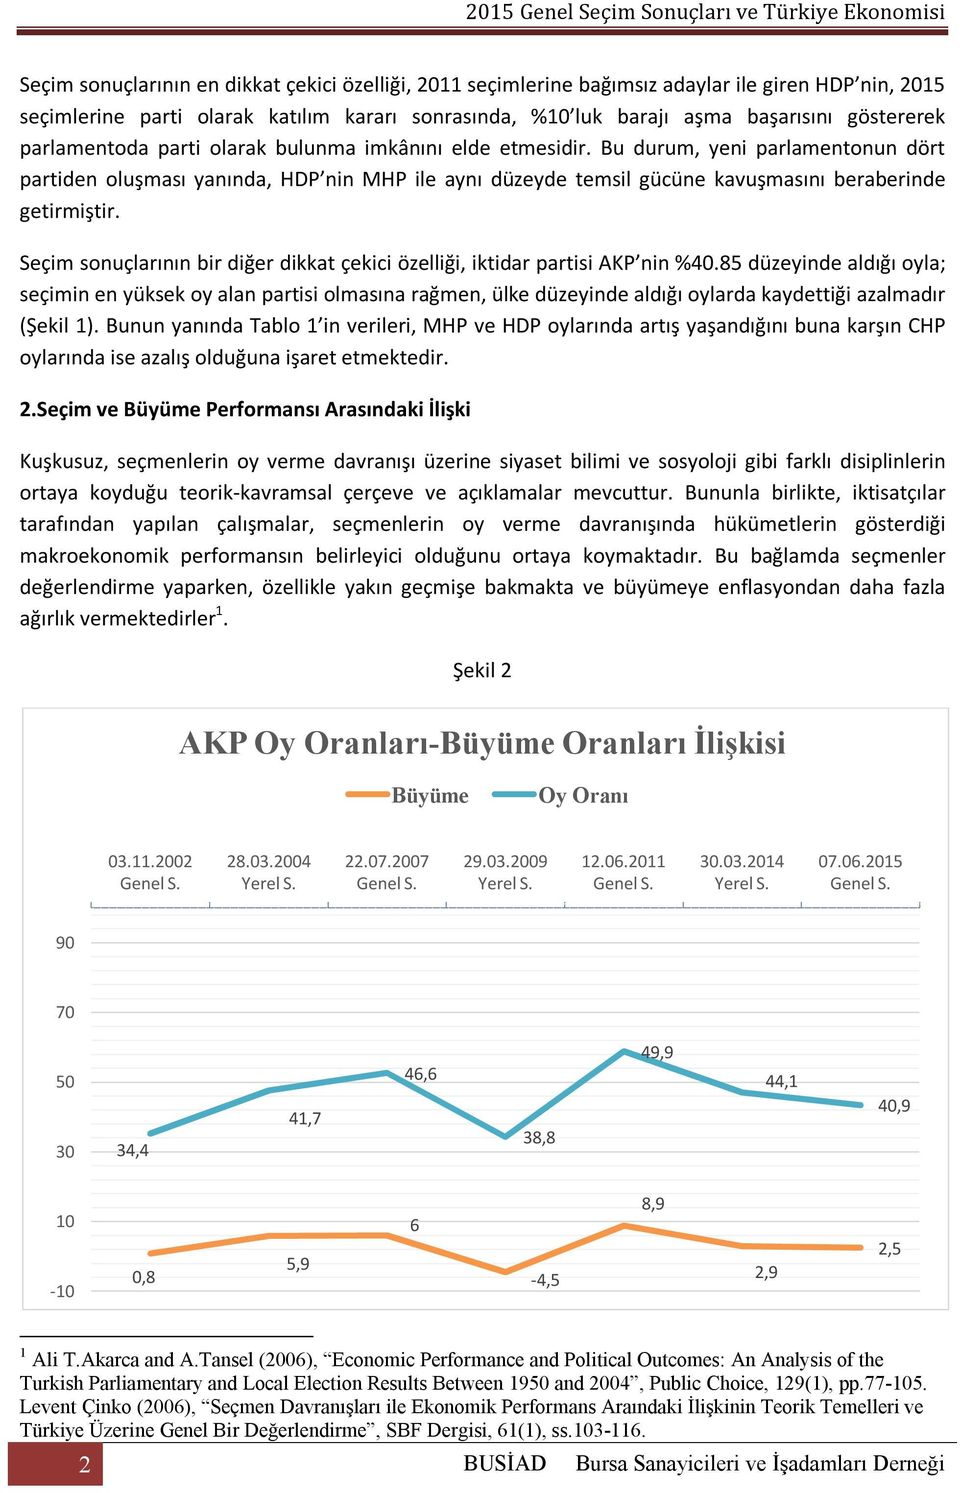 Seçim sonuçlarının bir diğer dikkat çekici özelliği, iktidar partisi AKP nin %40.